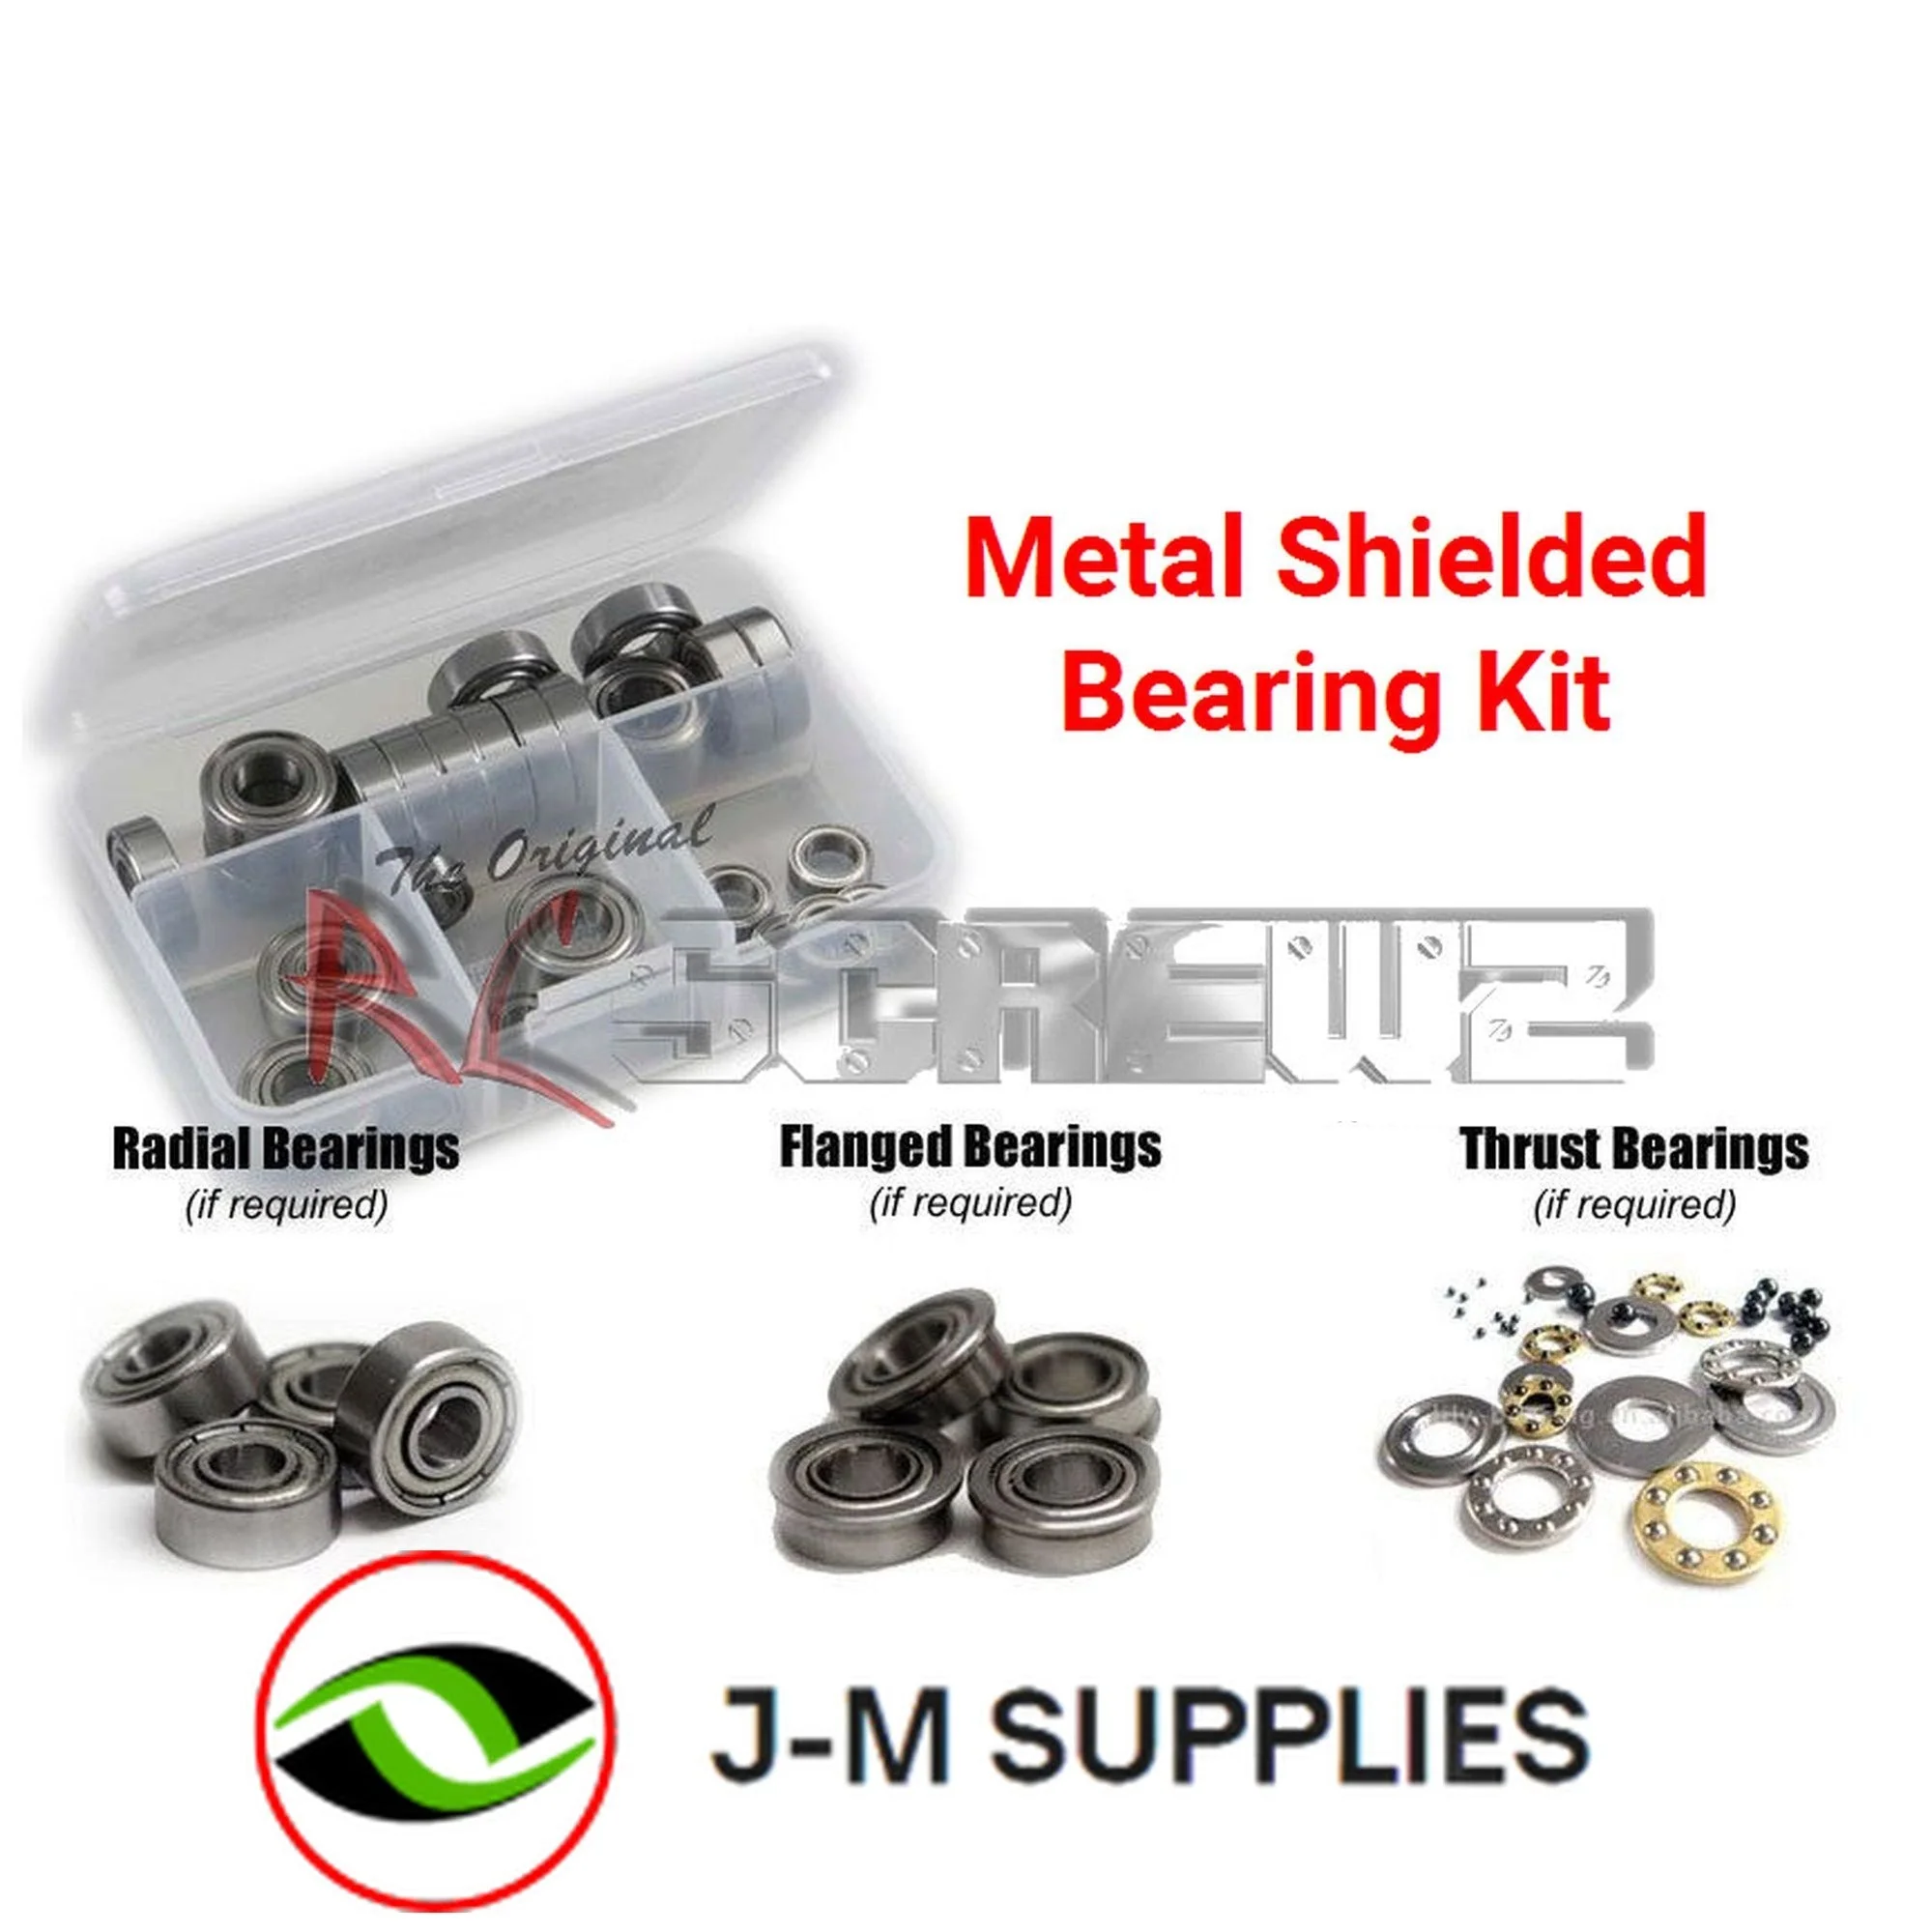 RCScrewZ Metal Shielded Bearing Kit tam050b for Tamiya M03L Series - Picture 1 of 12